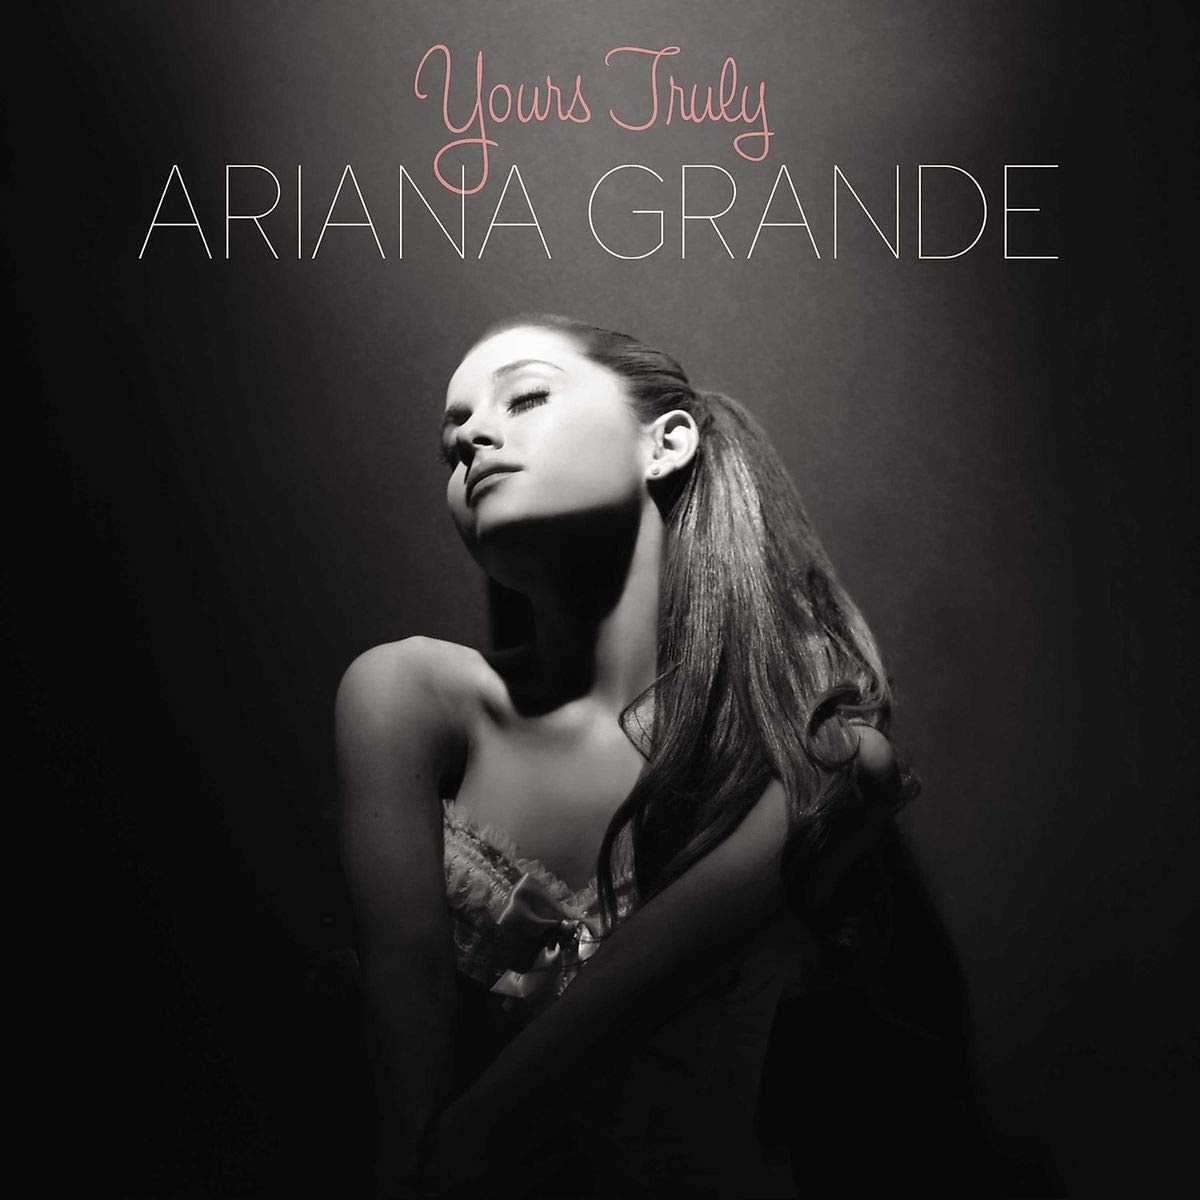 Grande, Ariana: Yours Truly LP купить в интернет магазине ЛегатоМюзик.